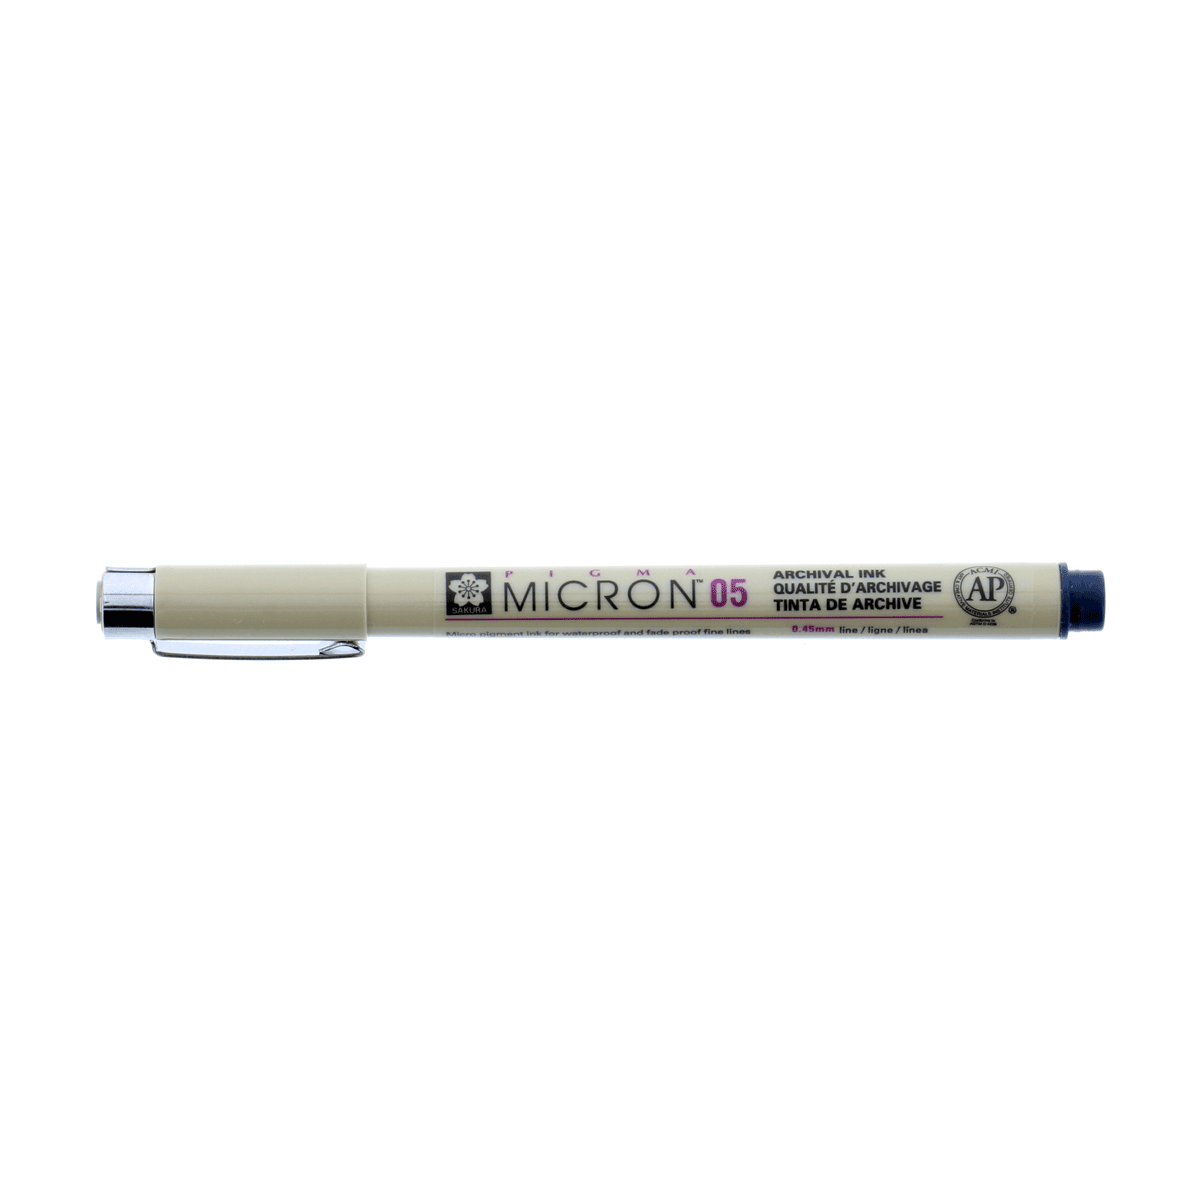 Micron Pigma Pen - Blue/Black 05 .45mm Line